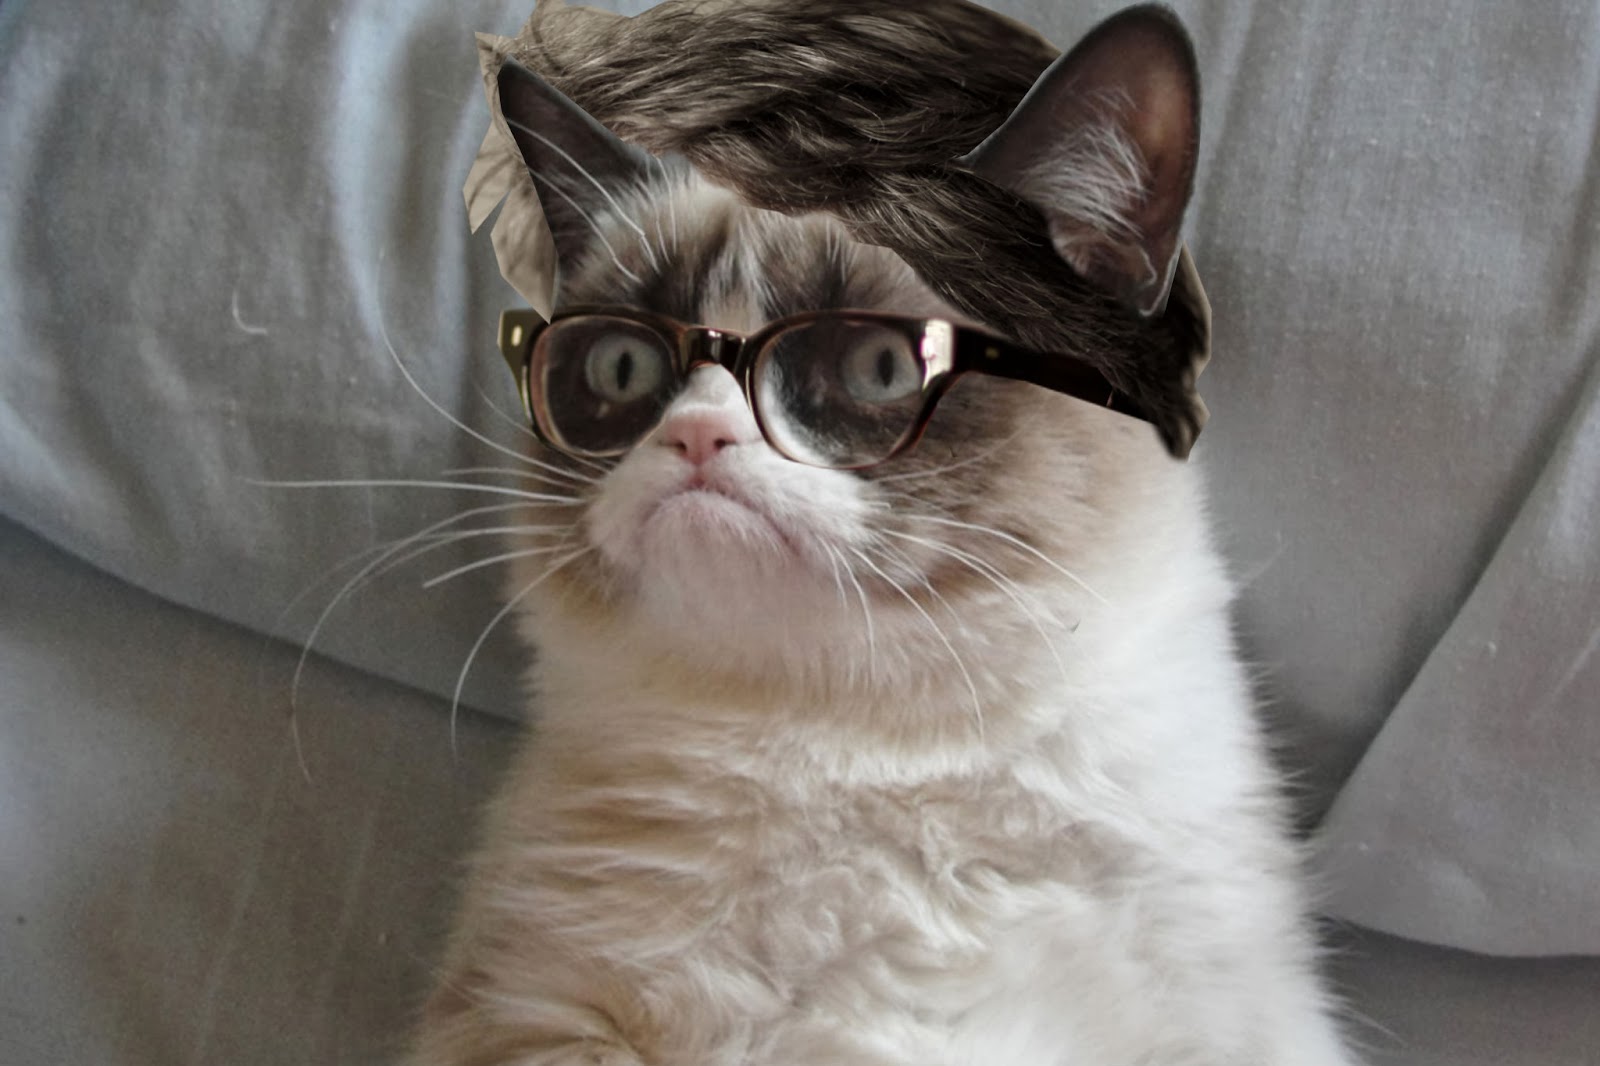 Скучная унылая. Гранд пи Кэт. Порода кошки Грампи Кэт. Кот в очках. Унылый кот.